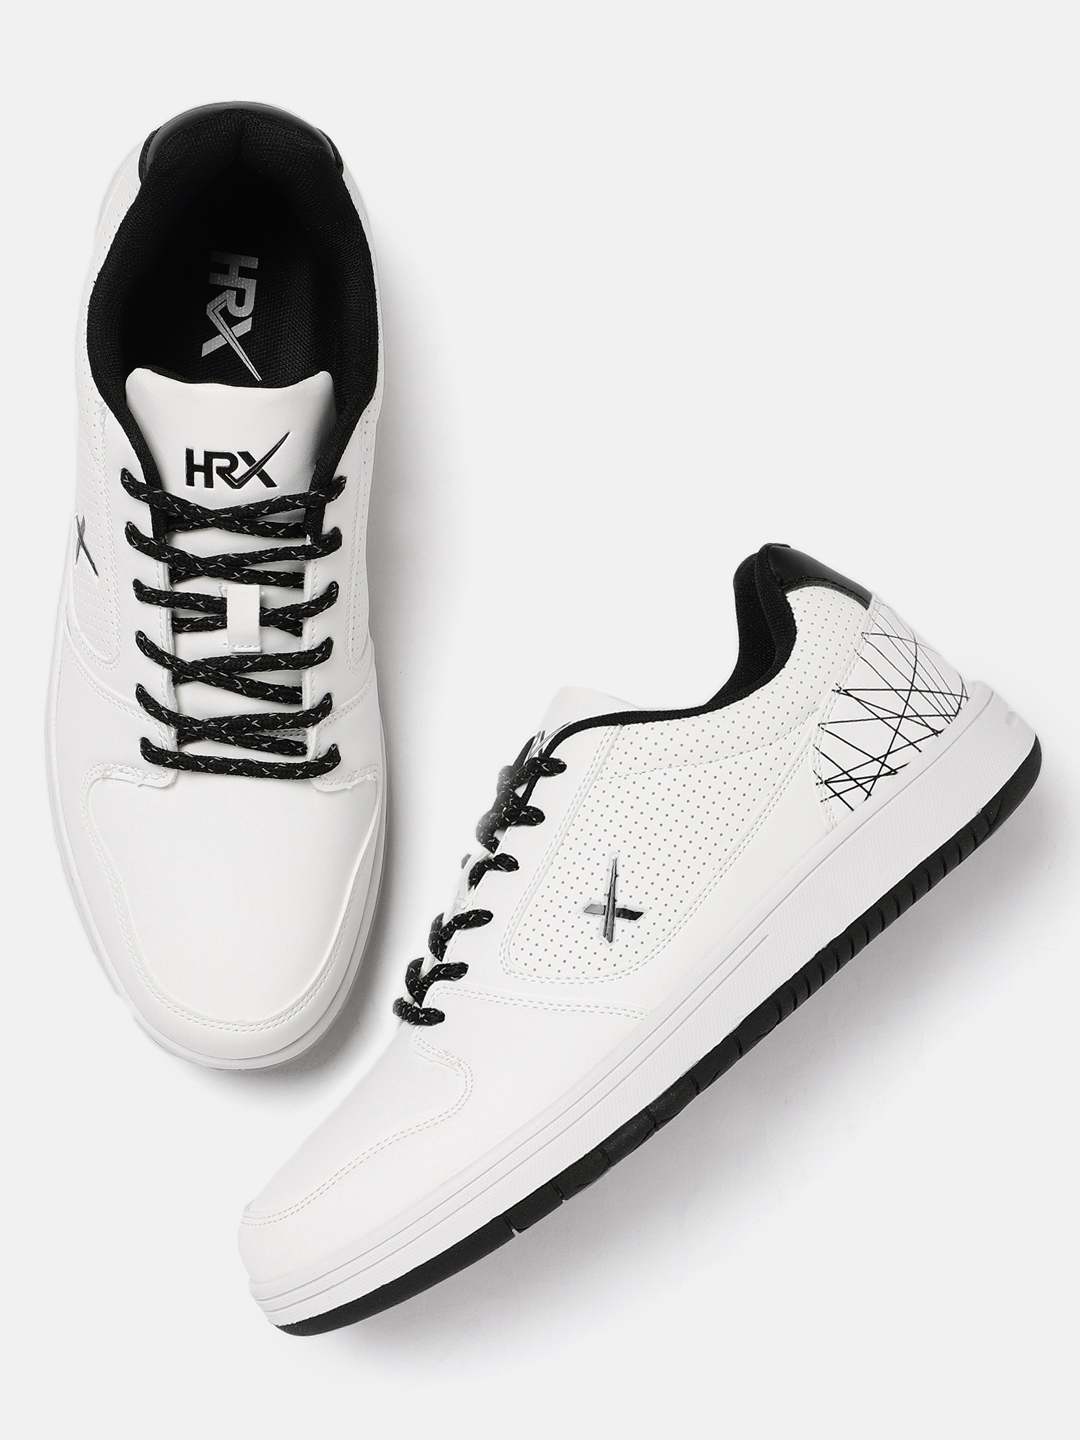 hrx by hrithik roshan men white sneakers